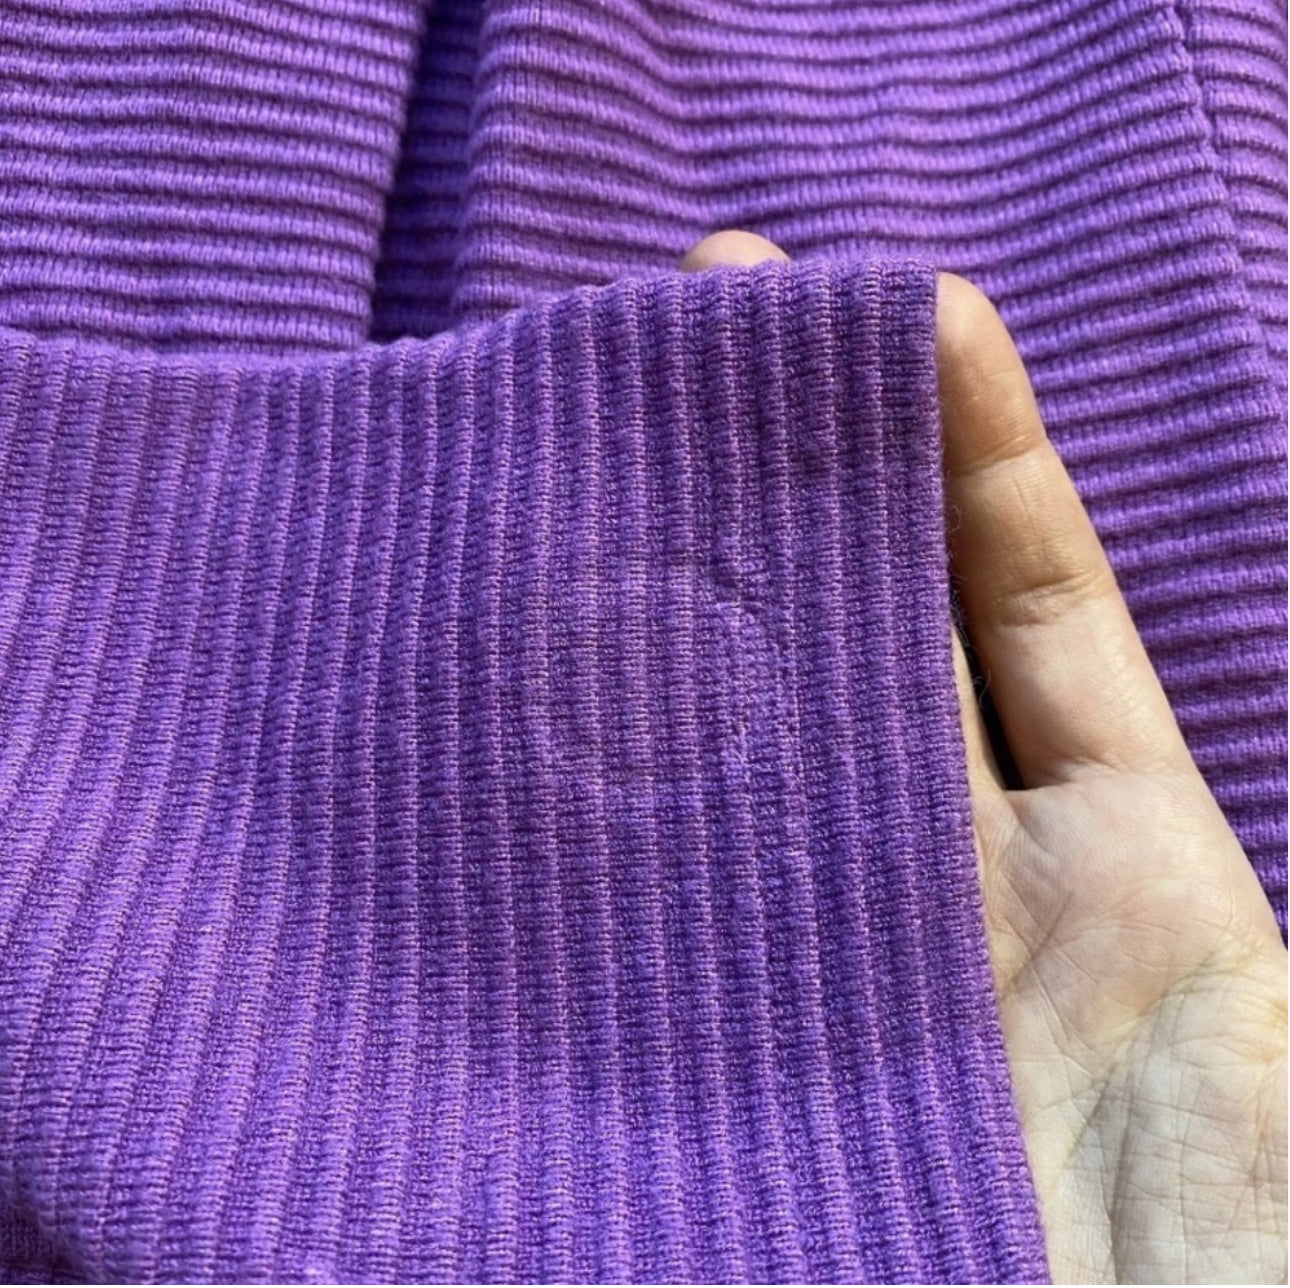 NWOT Melloday Size SP Purple Ribbed Boxy Oversized Mock Neck Sweater